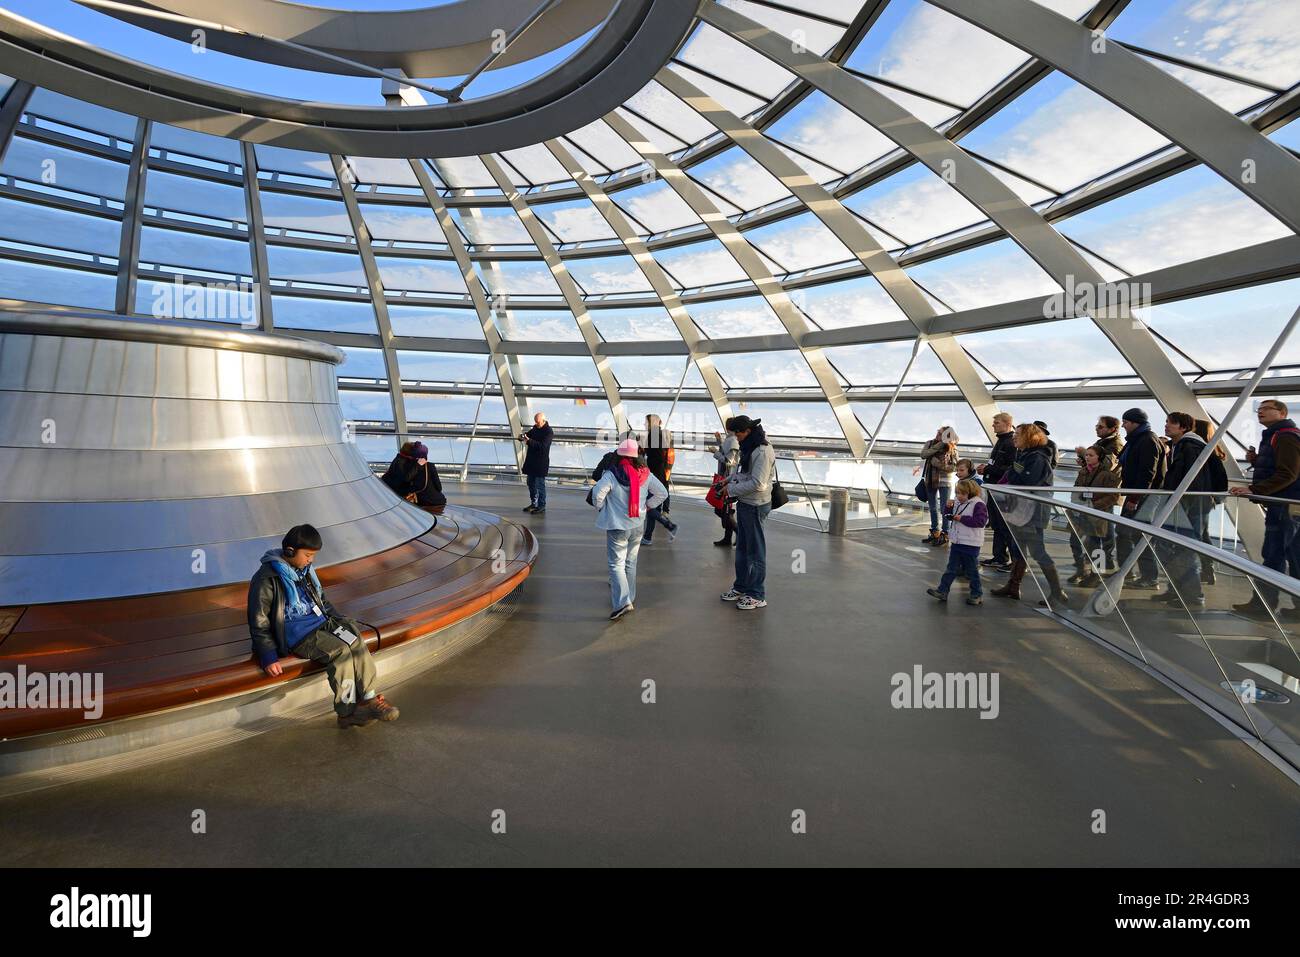 Partie supérieure du dôme du Reichstag, Reichstag Berlin, architecte Sir Norman Foster, Berlin, Allemagne Banque D'Images